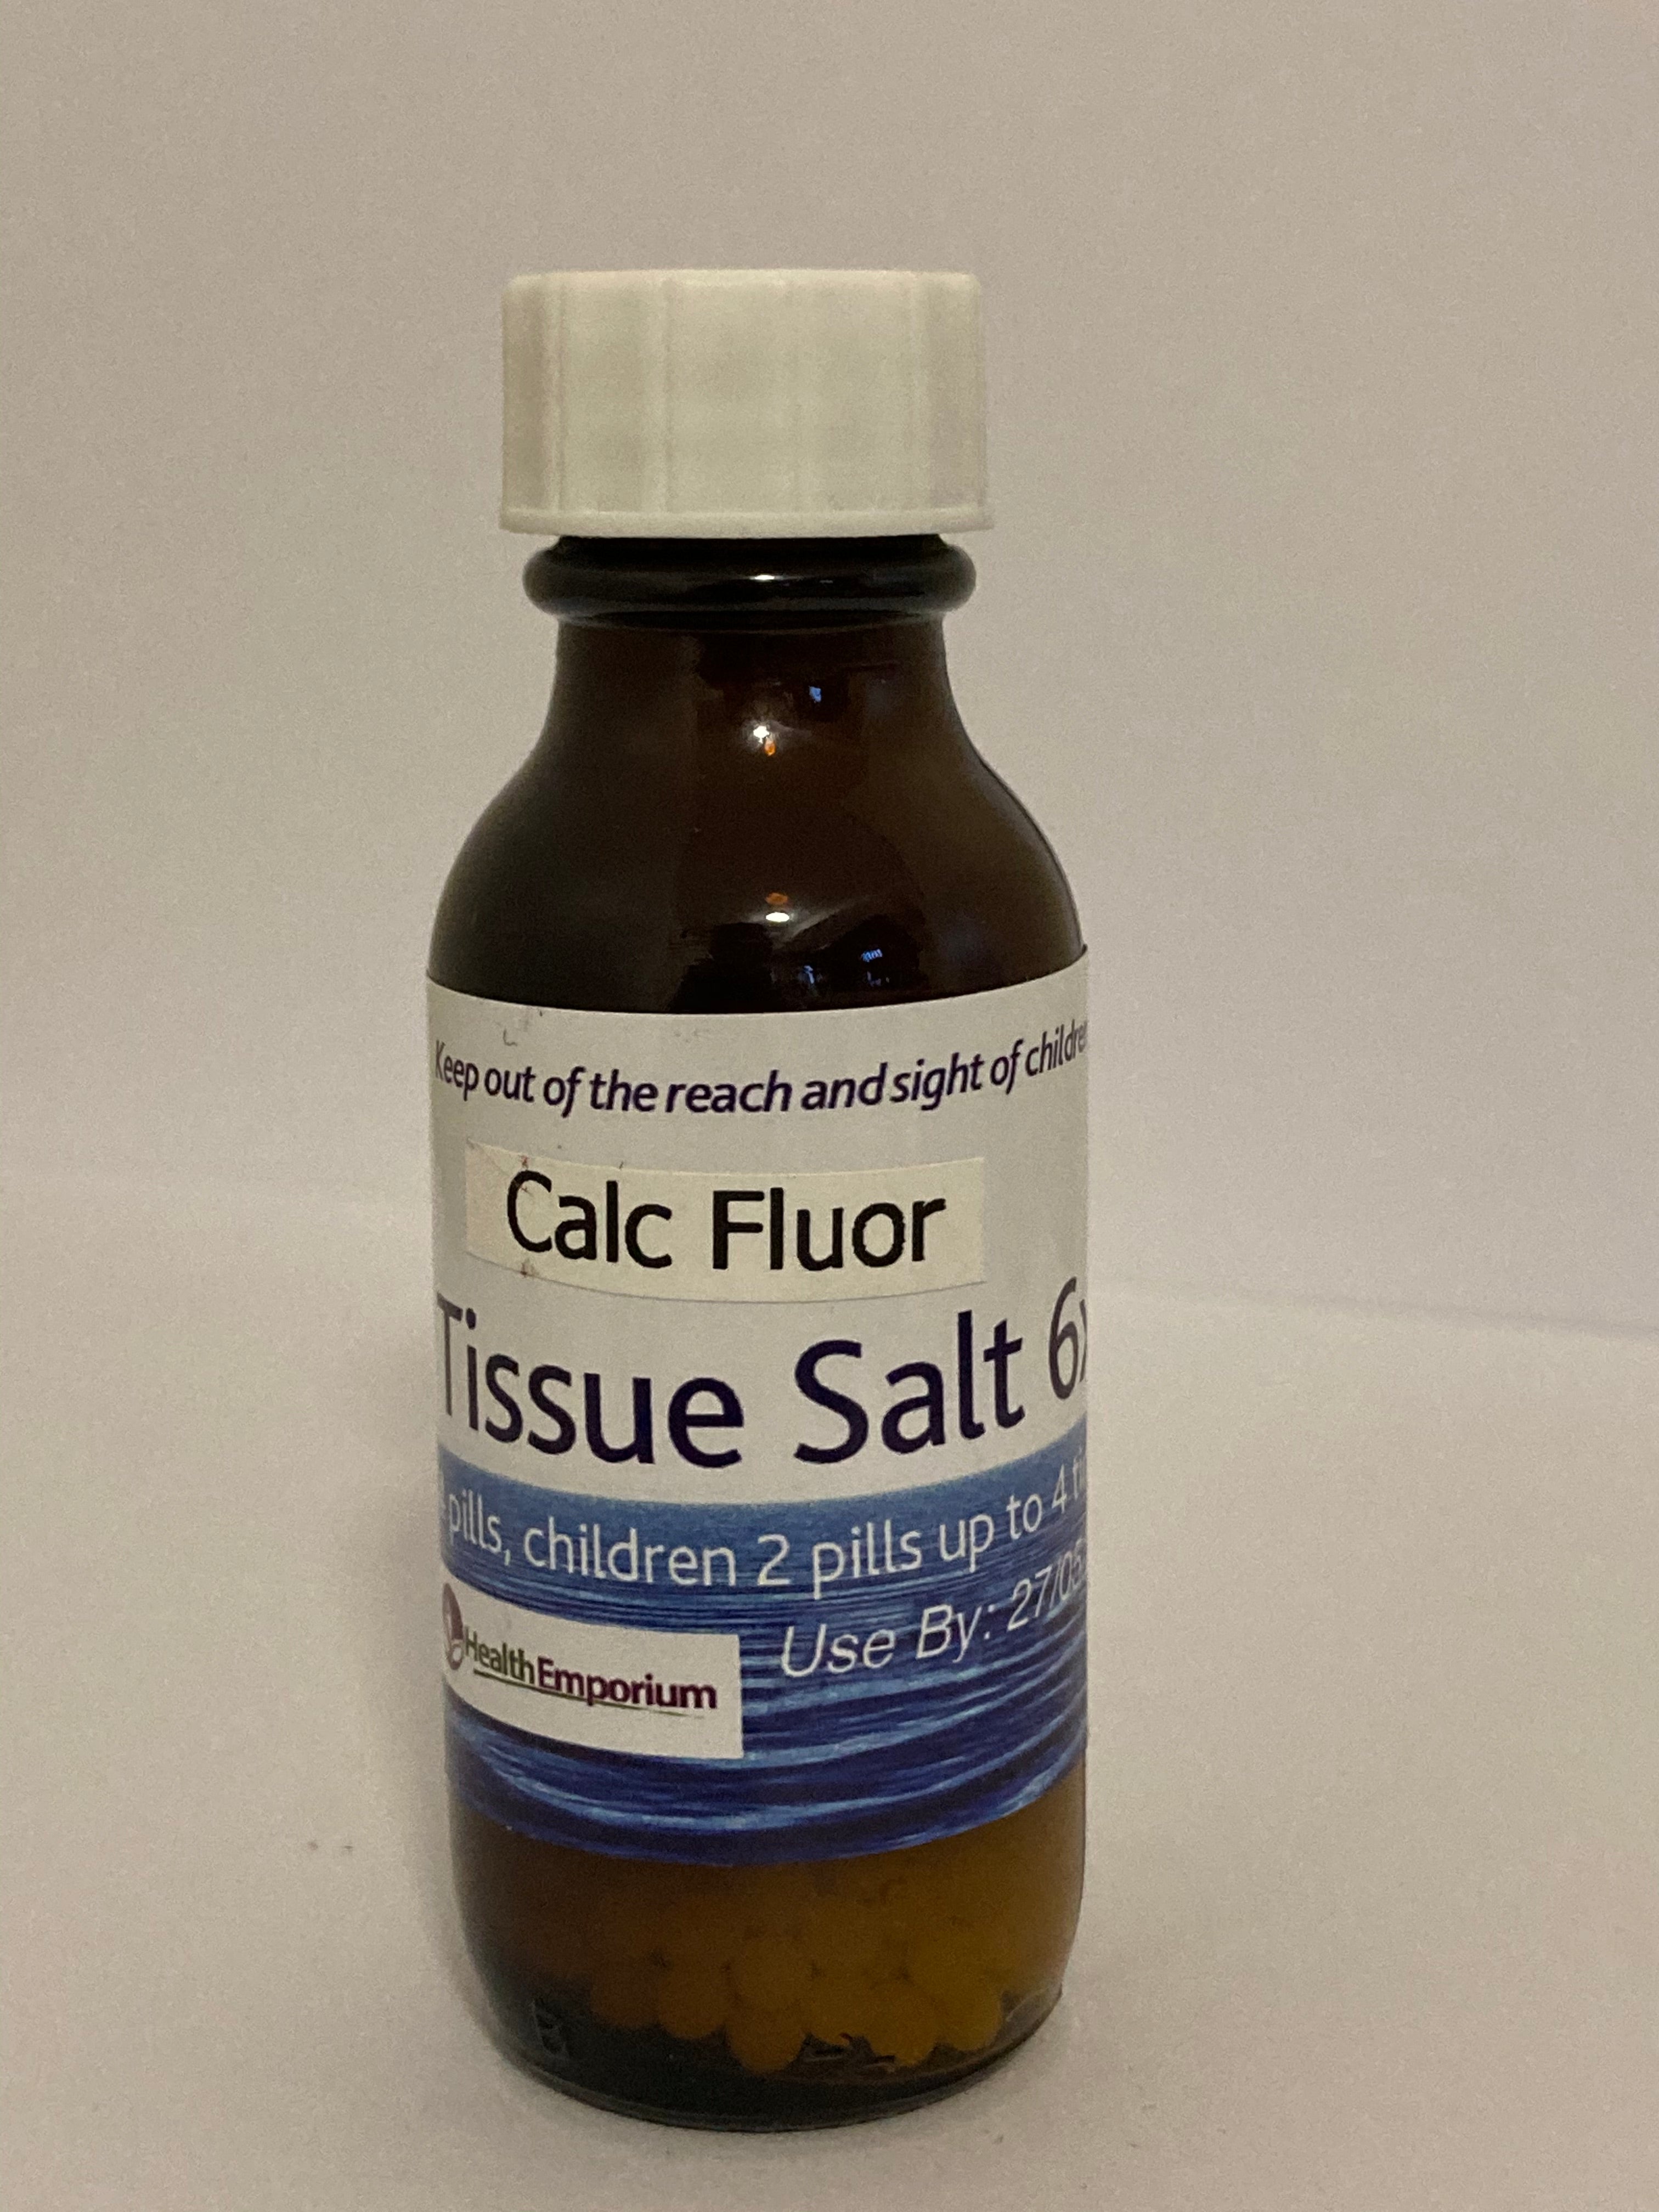 Calc fluor no 1 garam jaringan